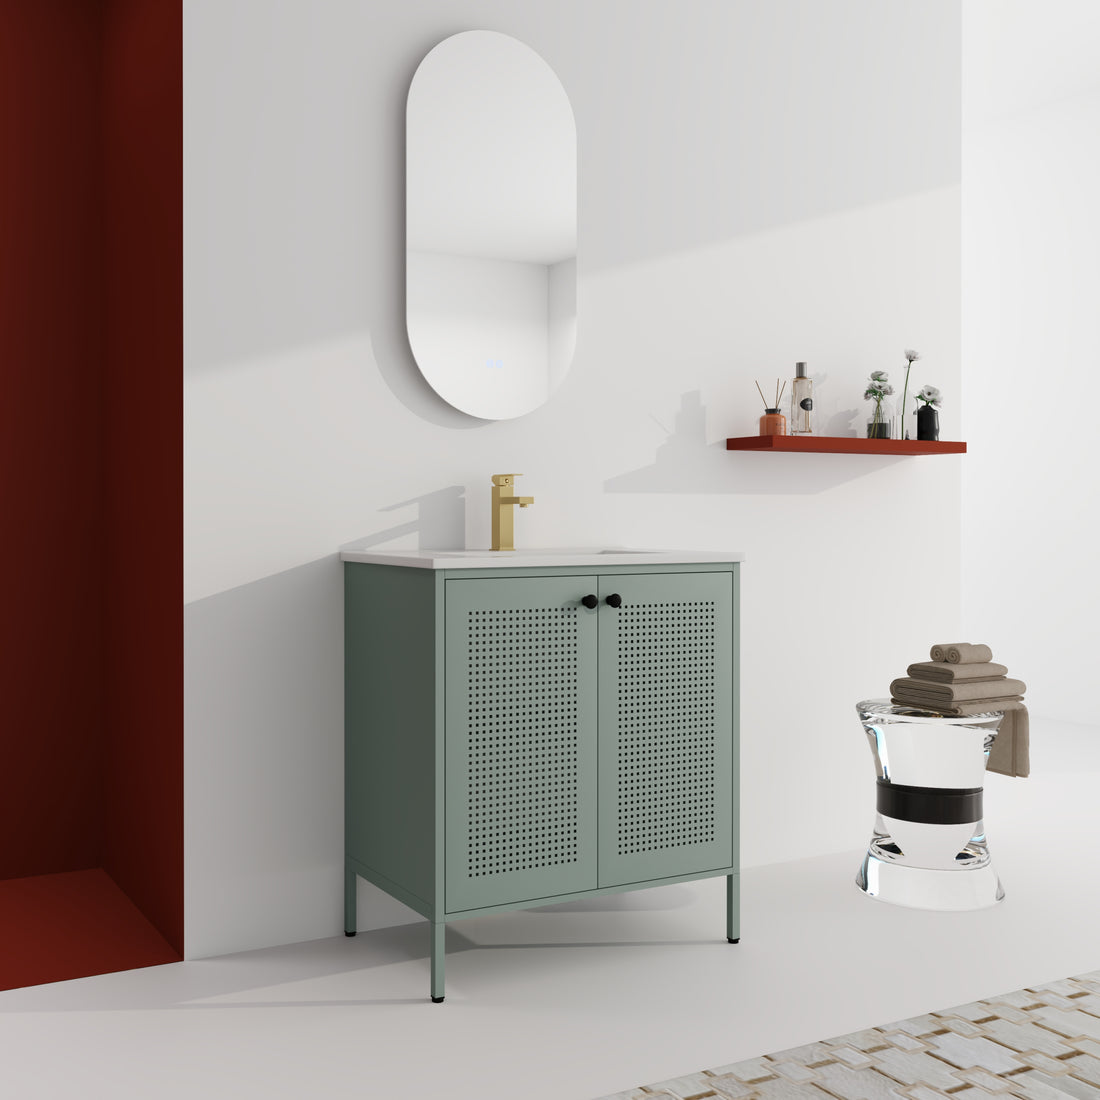 30 Inch Freestanding Bathroom Vanity With Ceramic SInk black-2-bathroom-freestanding-modern-steel